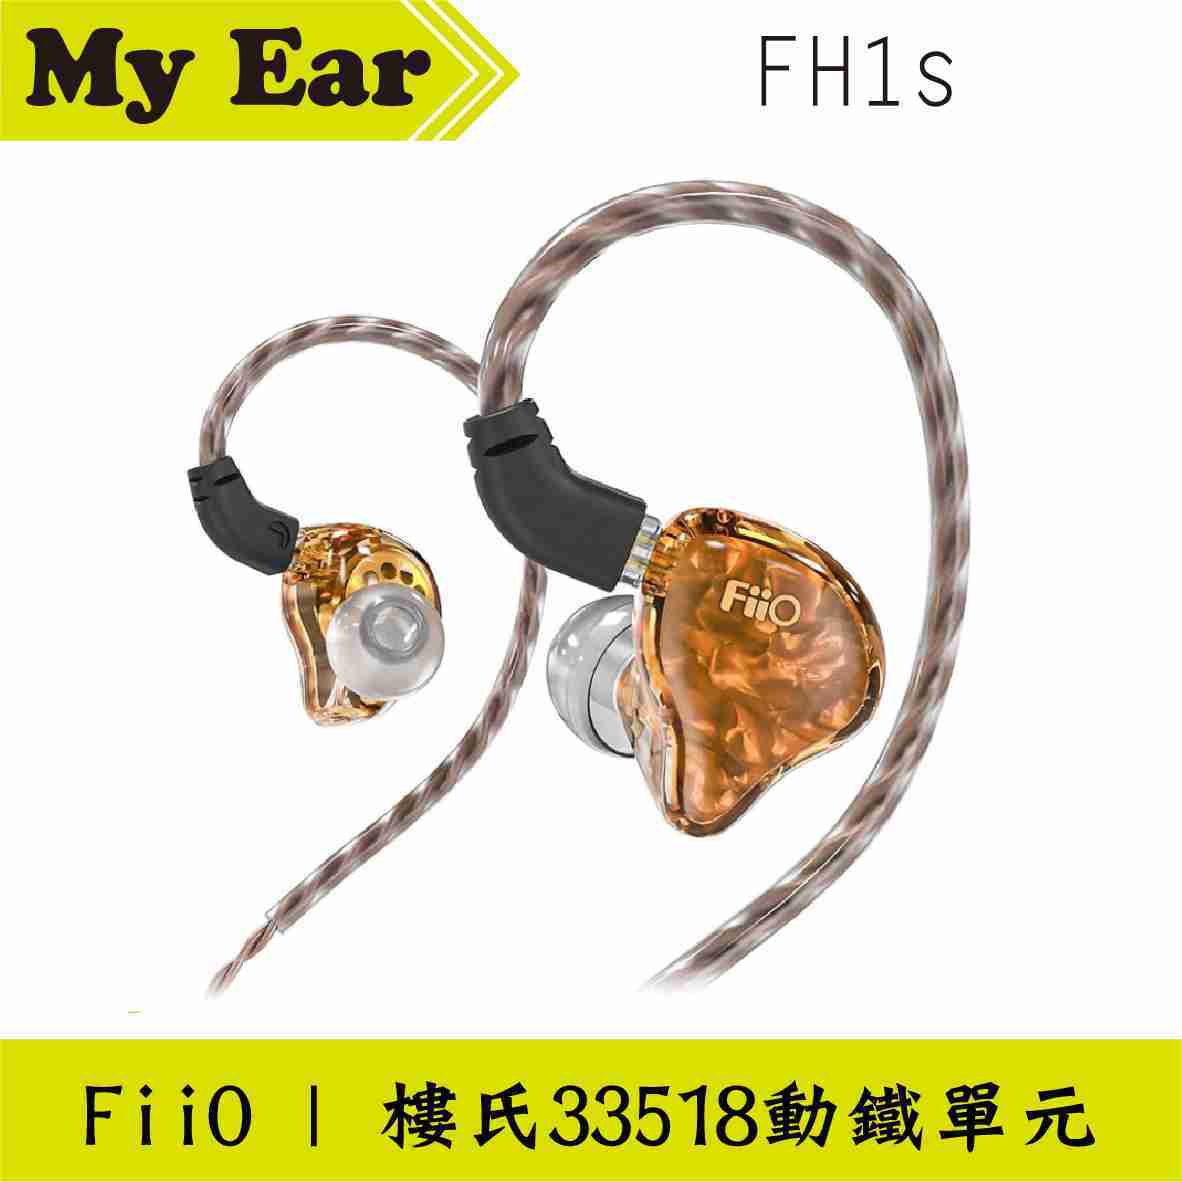 FiiO FH1s 入耳式 線控耳機 黃色 CIEM可換線 | My Ear耳機專門店